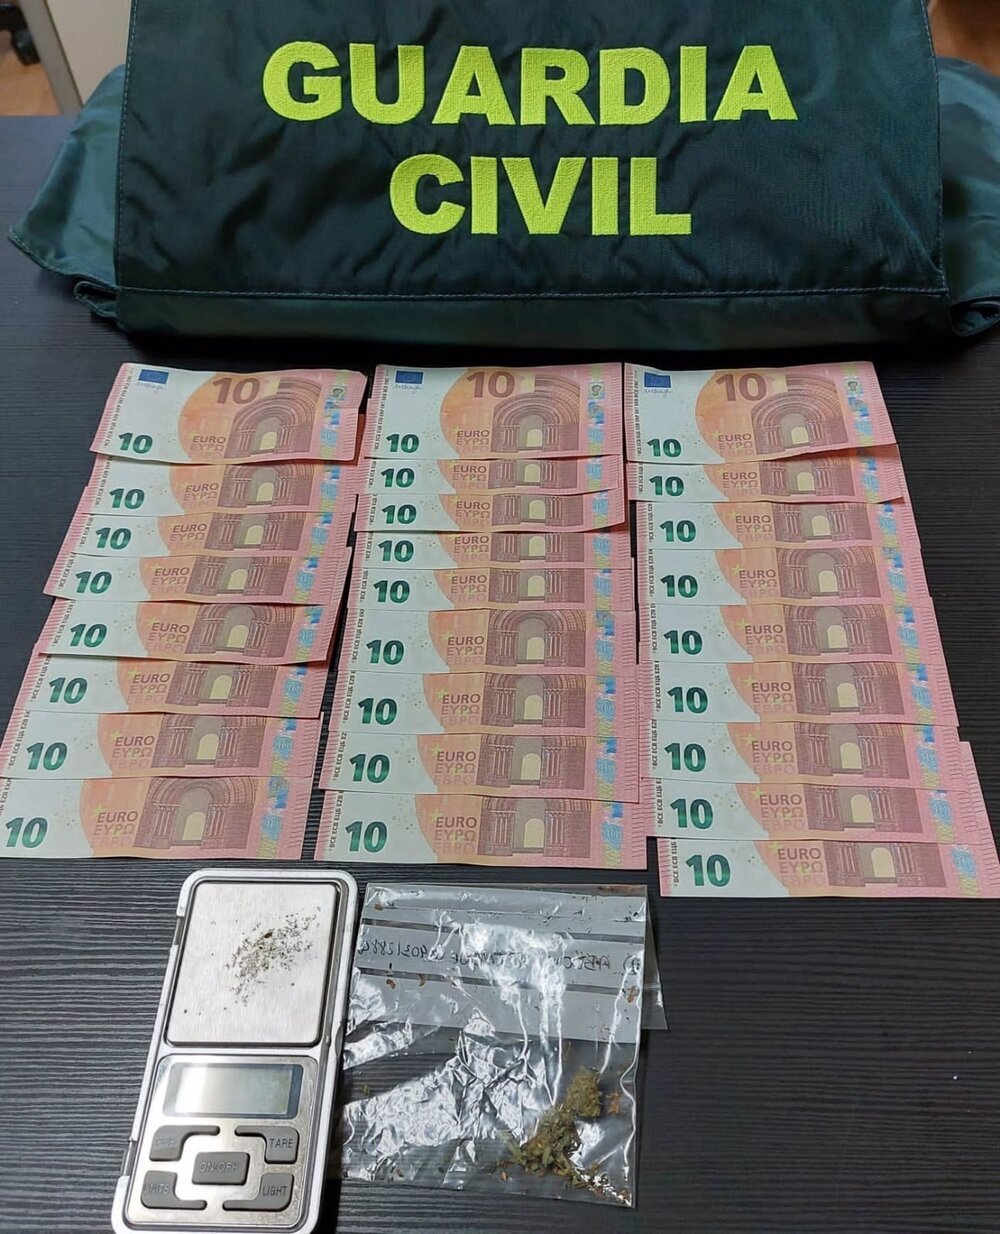 Un detenido en Corella acusado de falsificación de moneda